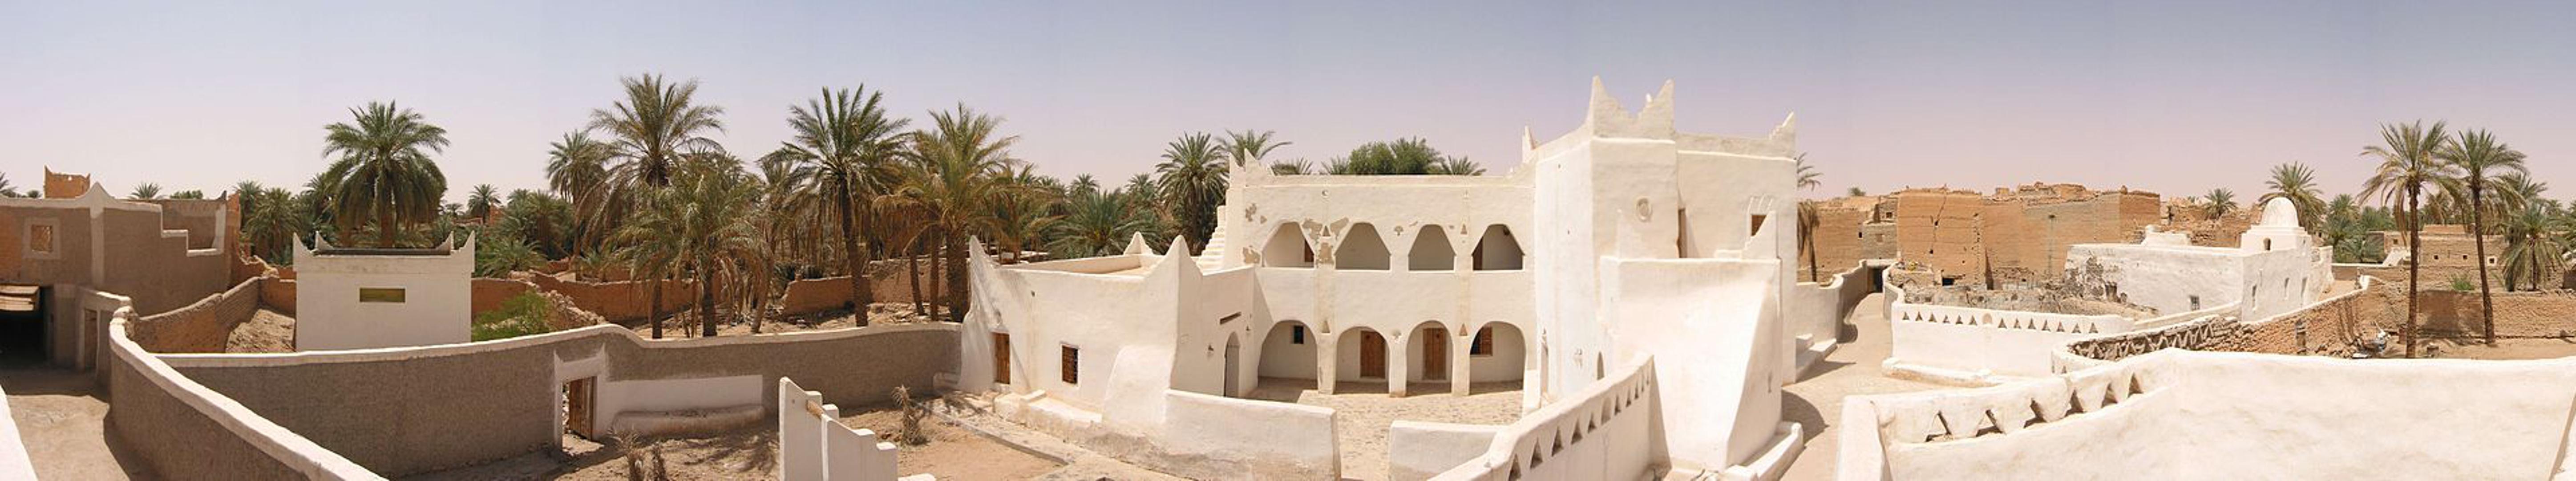 9. Ghadames, Libija - Ova pustinjska oaza pod zaštitom je UNESCO-a zbog svojih malenih kućica od blata koje stanovnicima pomažu u nemilosrdnoj borbi protiv vrućine. Prosječna temperatura je 40 Celzijevih, a temperaturni maksimum bio je 55 stupnjeva.

